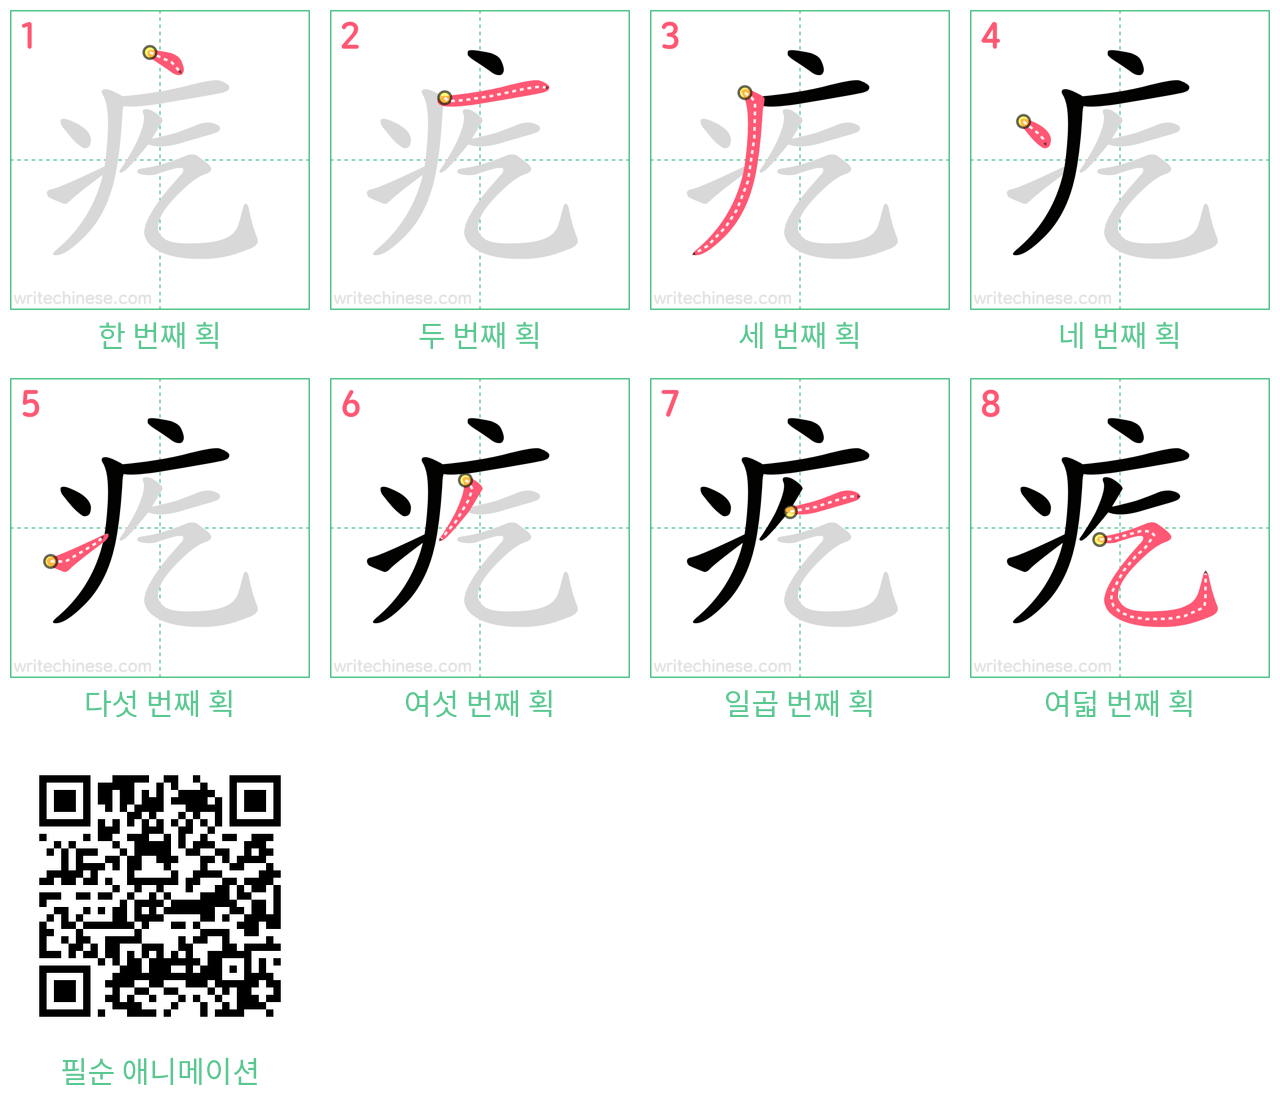 疙 step-by-step stroke order diagrams